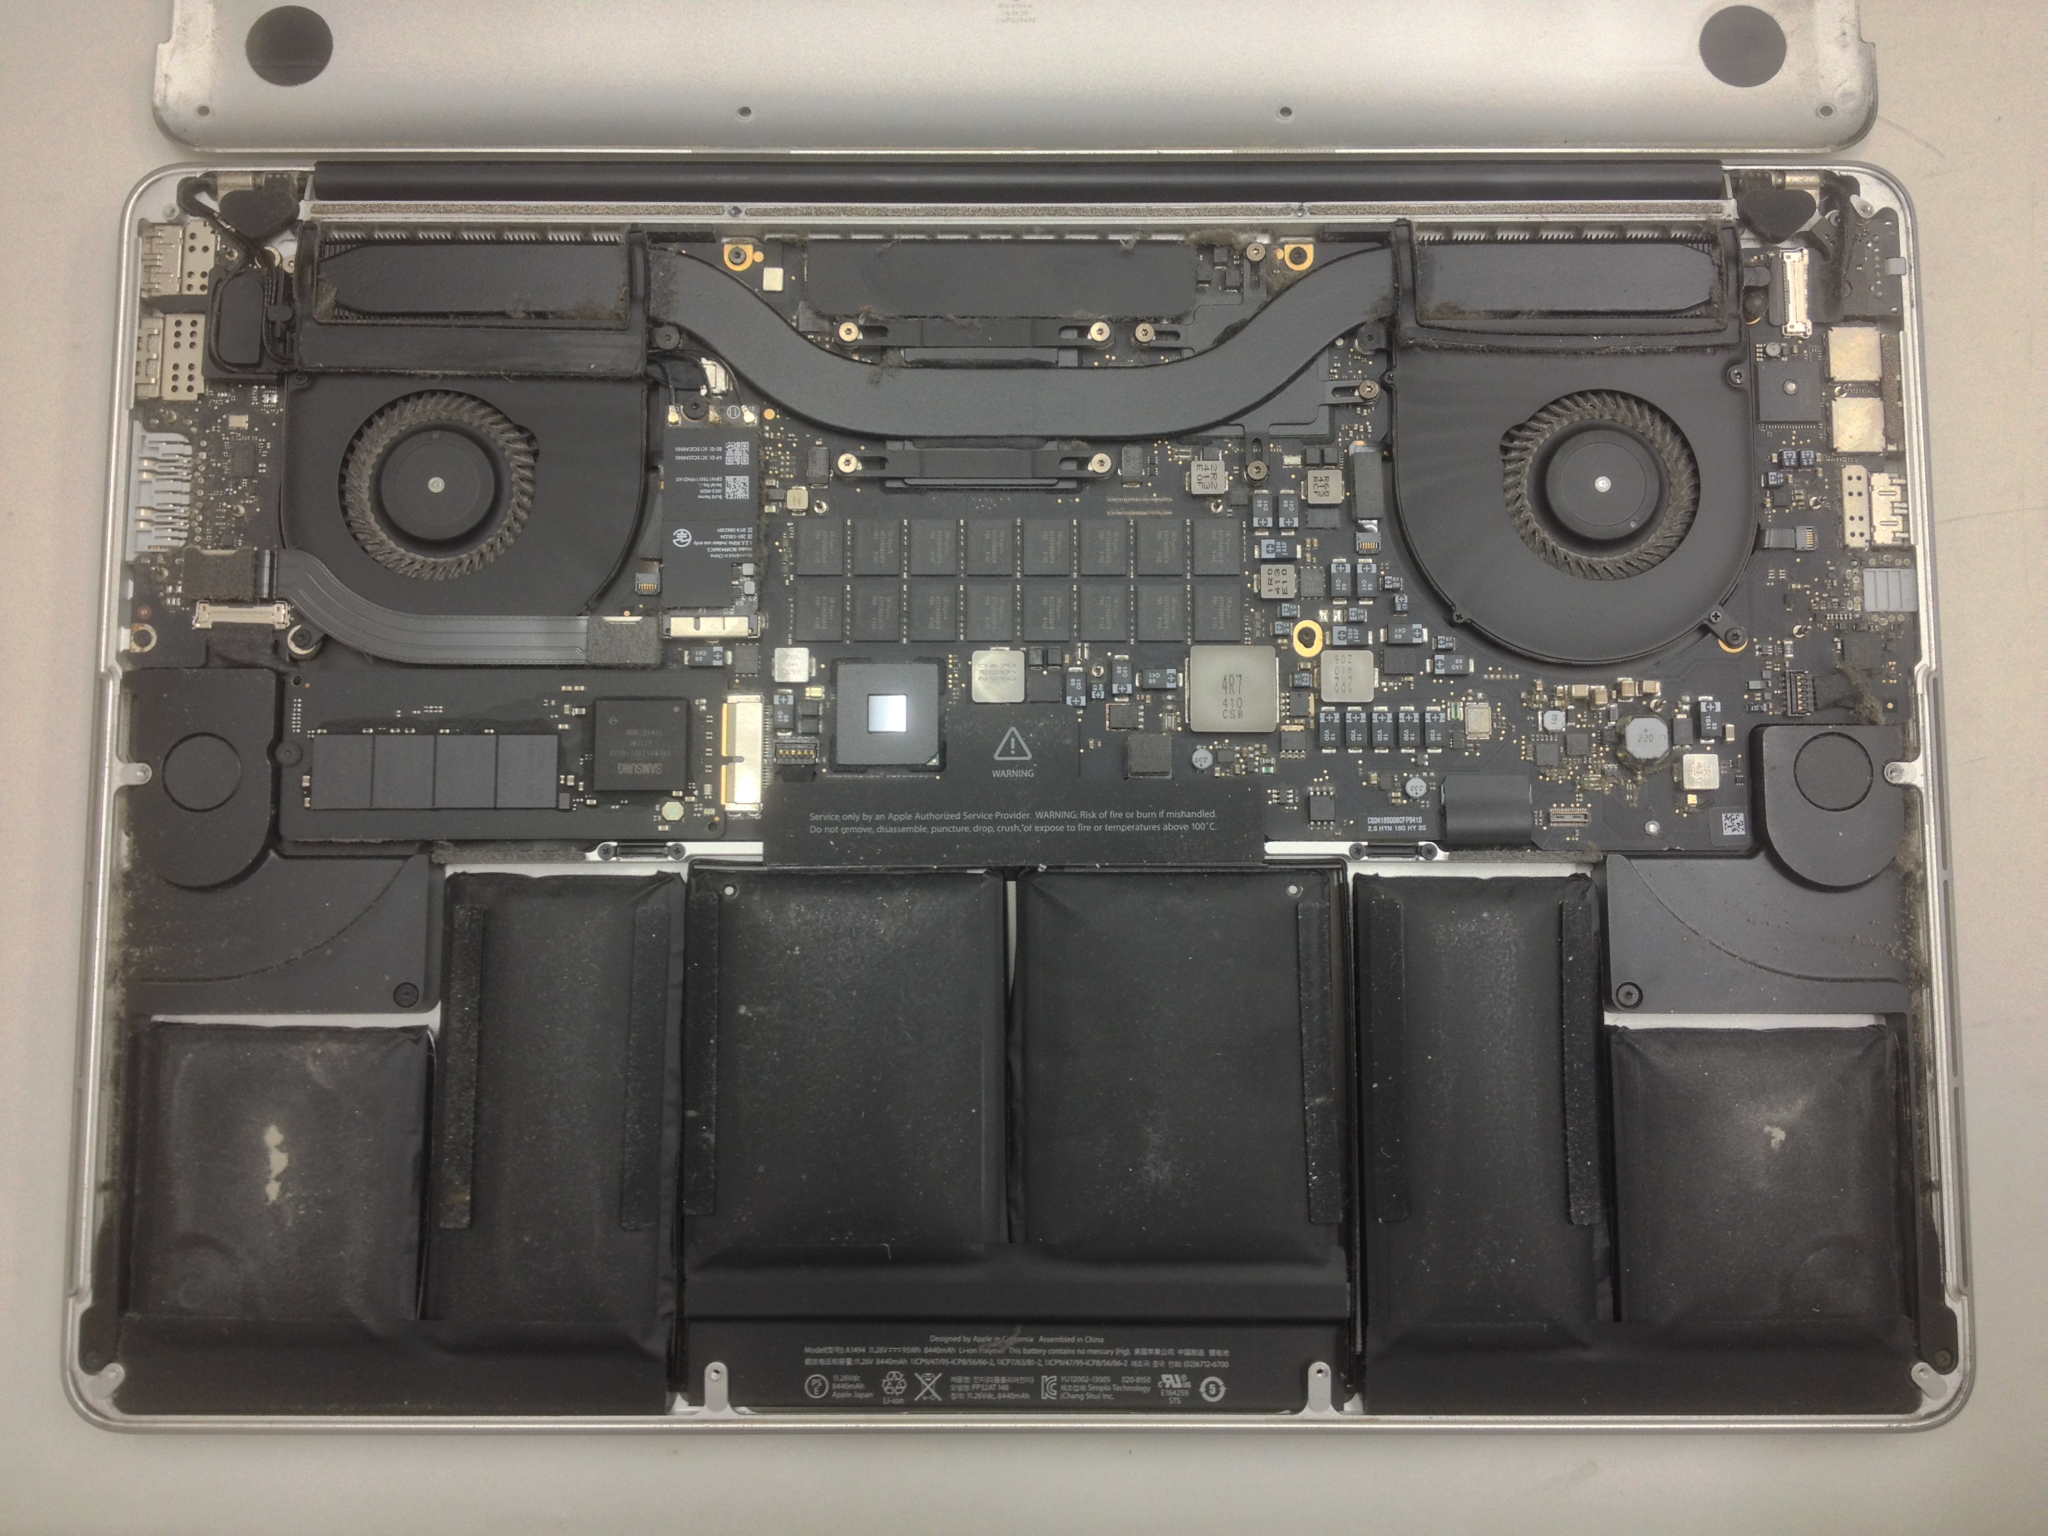 【極美品】MacBook Pro Retina 15インチ a1398